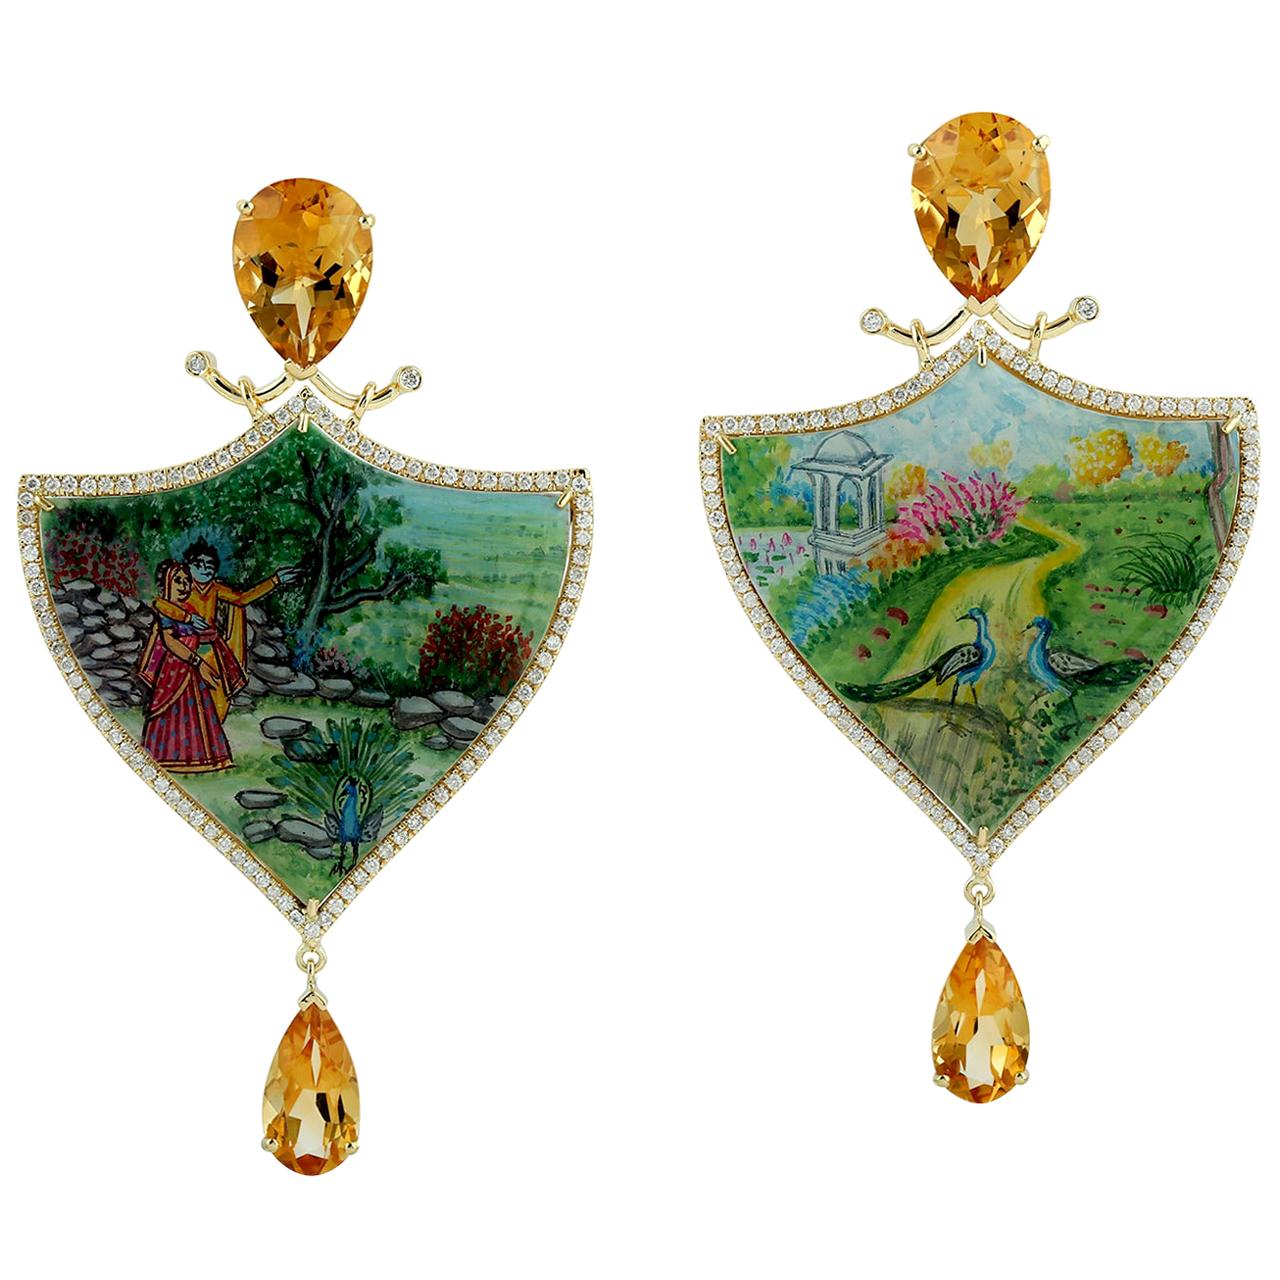 Boucles d'oreilles en or 18 carats avec émail, nacre, citrine et diamants peints à la main